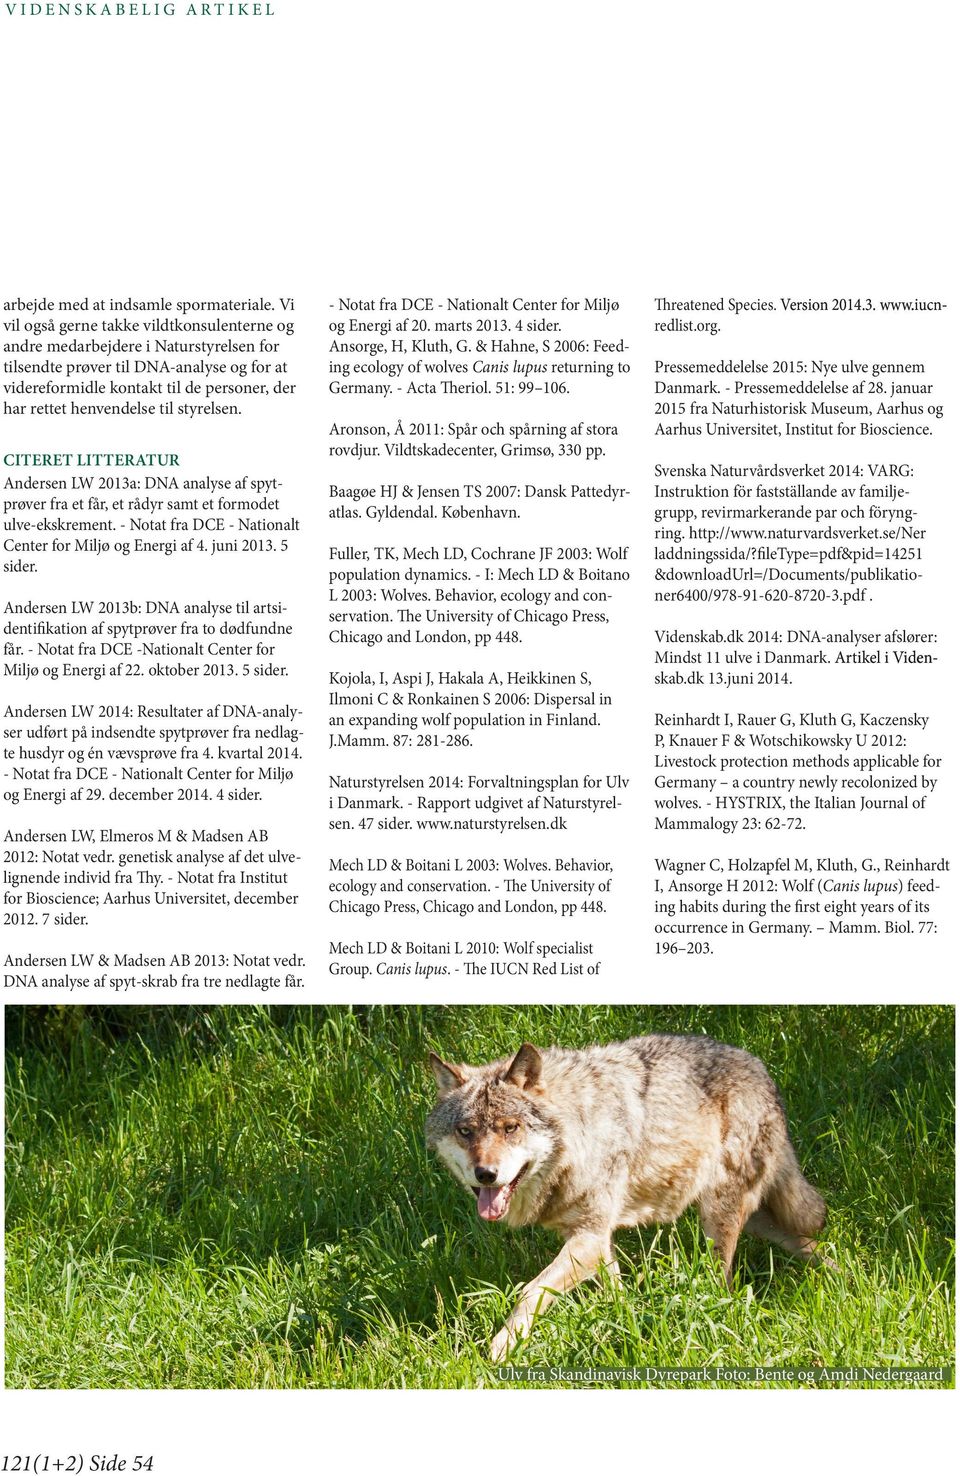 styrelsen. CITERET LITTERATUR Andersen LW 2013a: DNA analyse af spytprøver fra et får, et rådyr samt et formodet ulve-ekskrement. - Notat fra DCE - Nationalt Center for Miljø og Energi af 4.